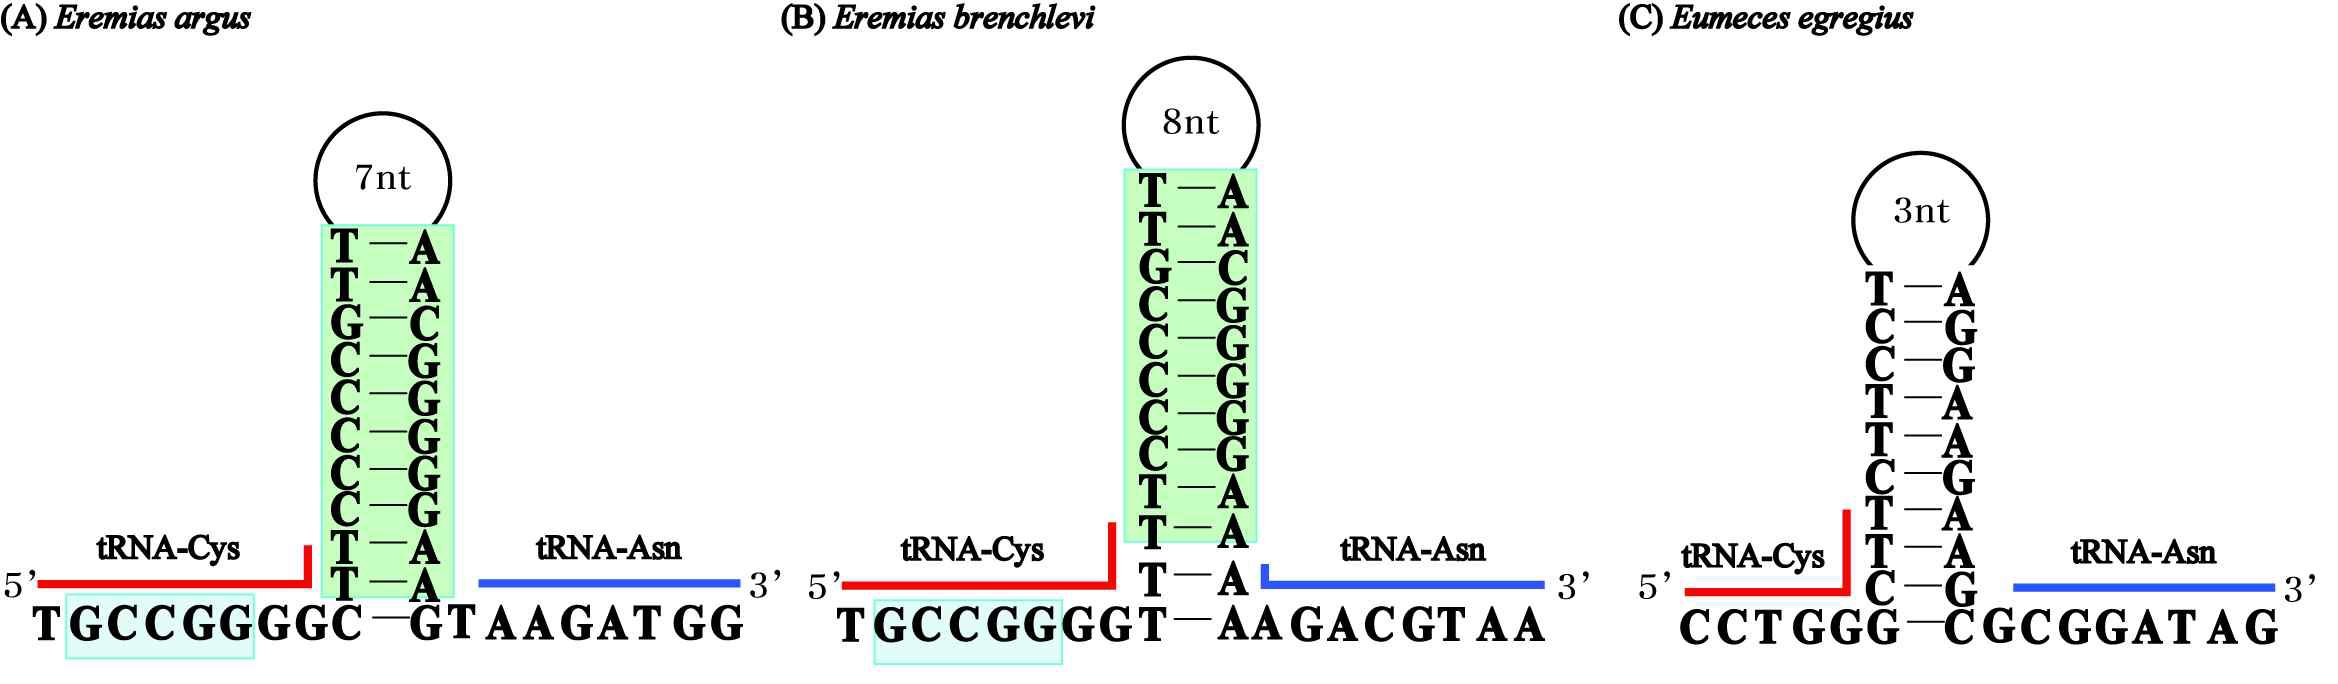 그림 Ⅱ-1-1-29. Eremias 속내 종들의 light-strand replication origin 2차 구조